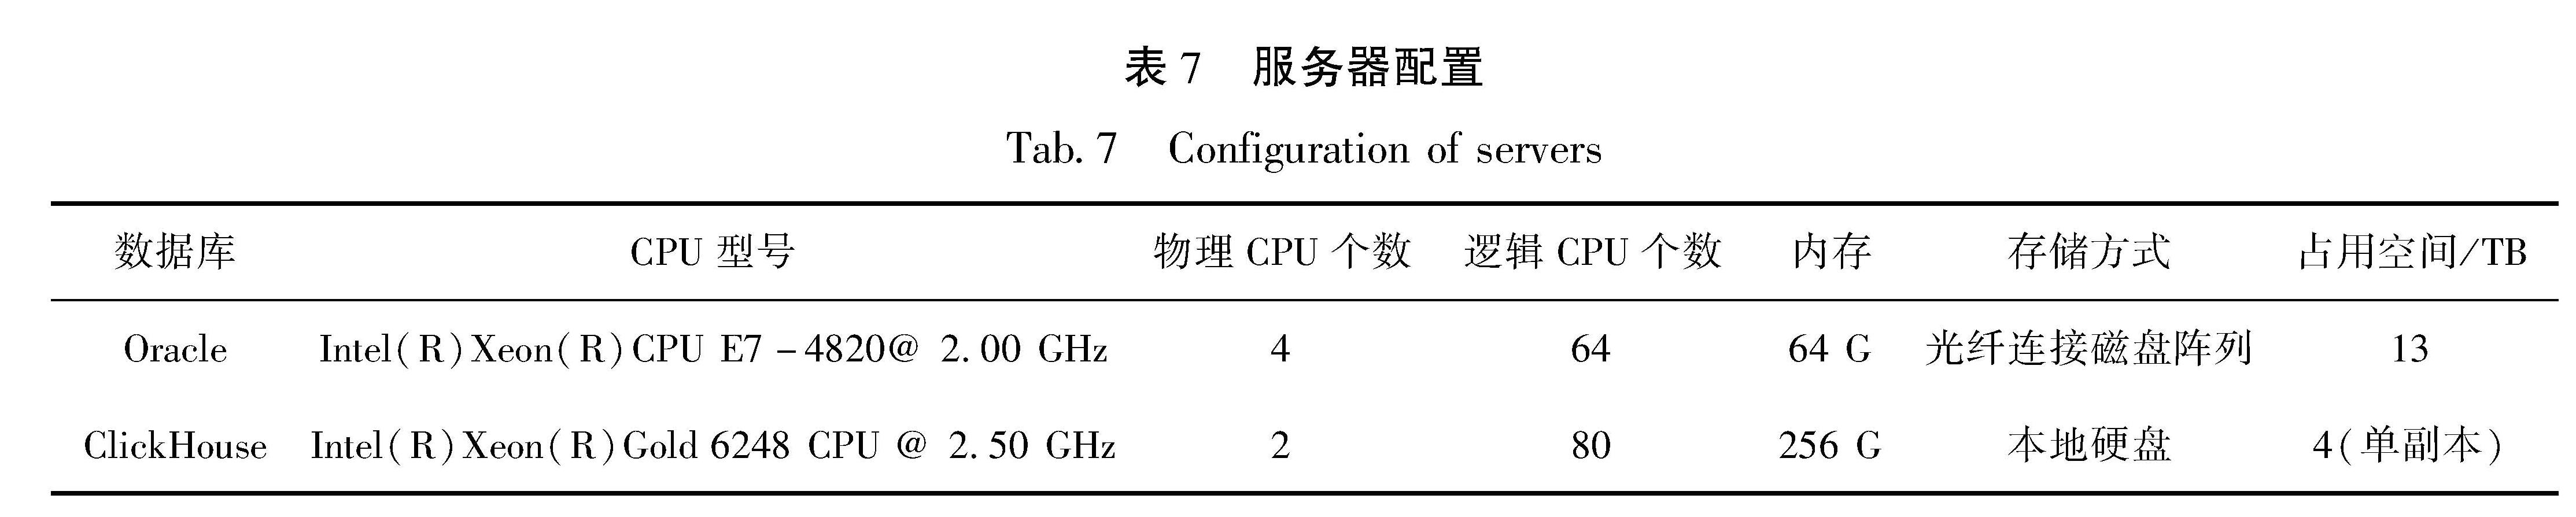 表7 服务器配置<br/>Tab.7 Configuration of servers